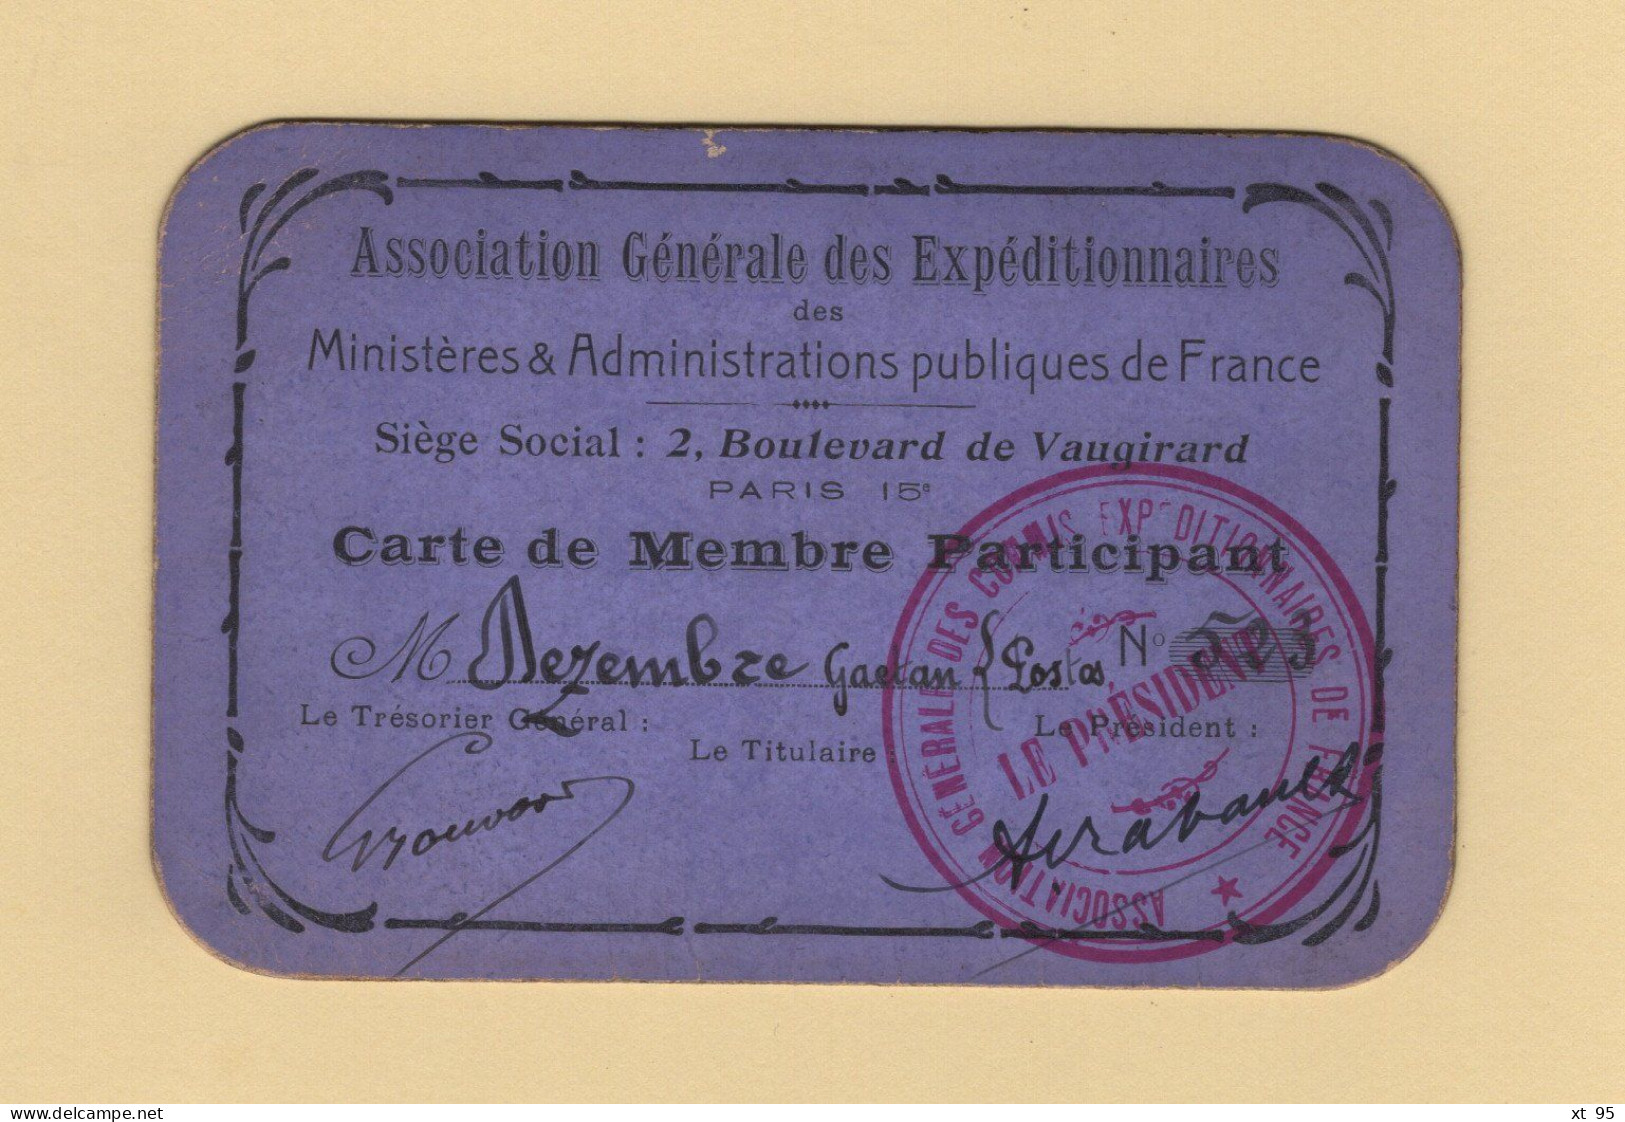 Carte De Membre Participant - Association Generale Des Expeditionnaires - Commis Expeditionnaire - Postes - Tessere Associative